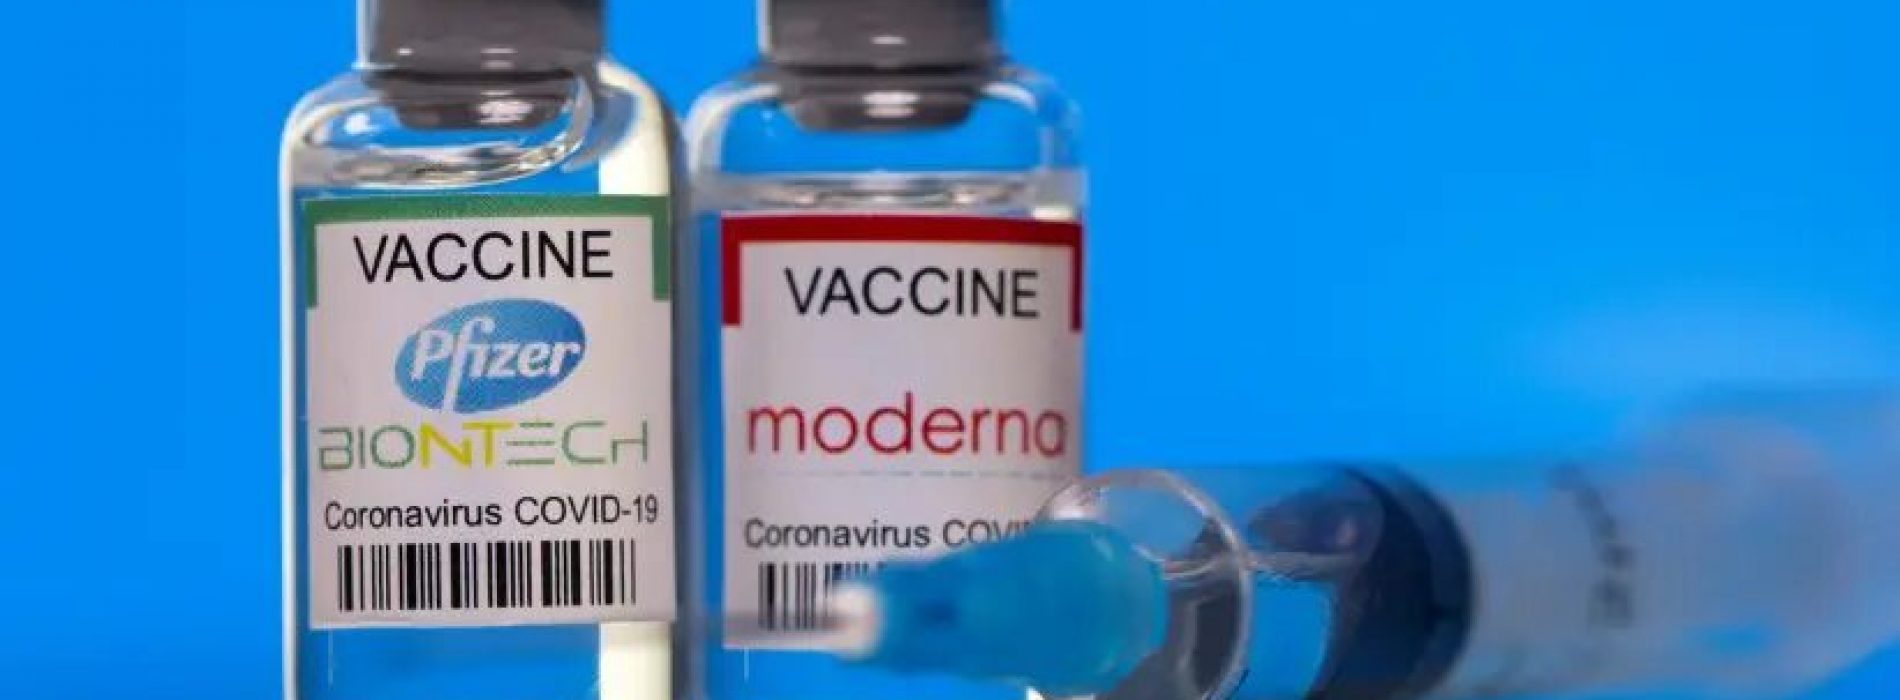 Sommige COVID-19-vaccins kunnen het risico op hiv verhogen, waarschuwen onderzoekers